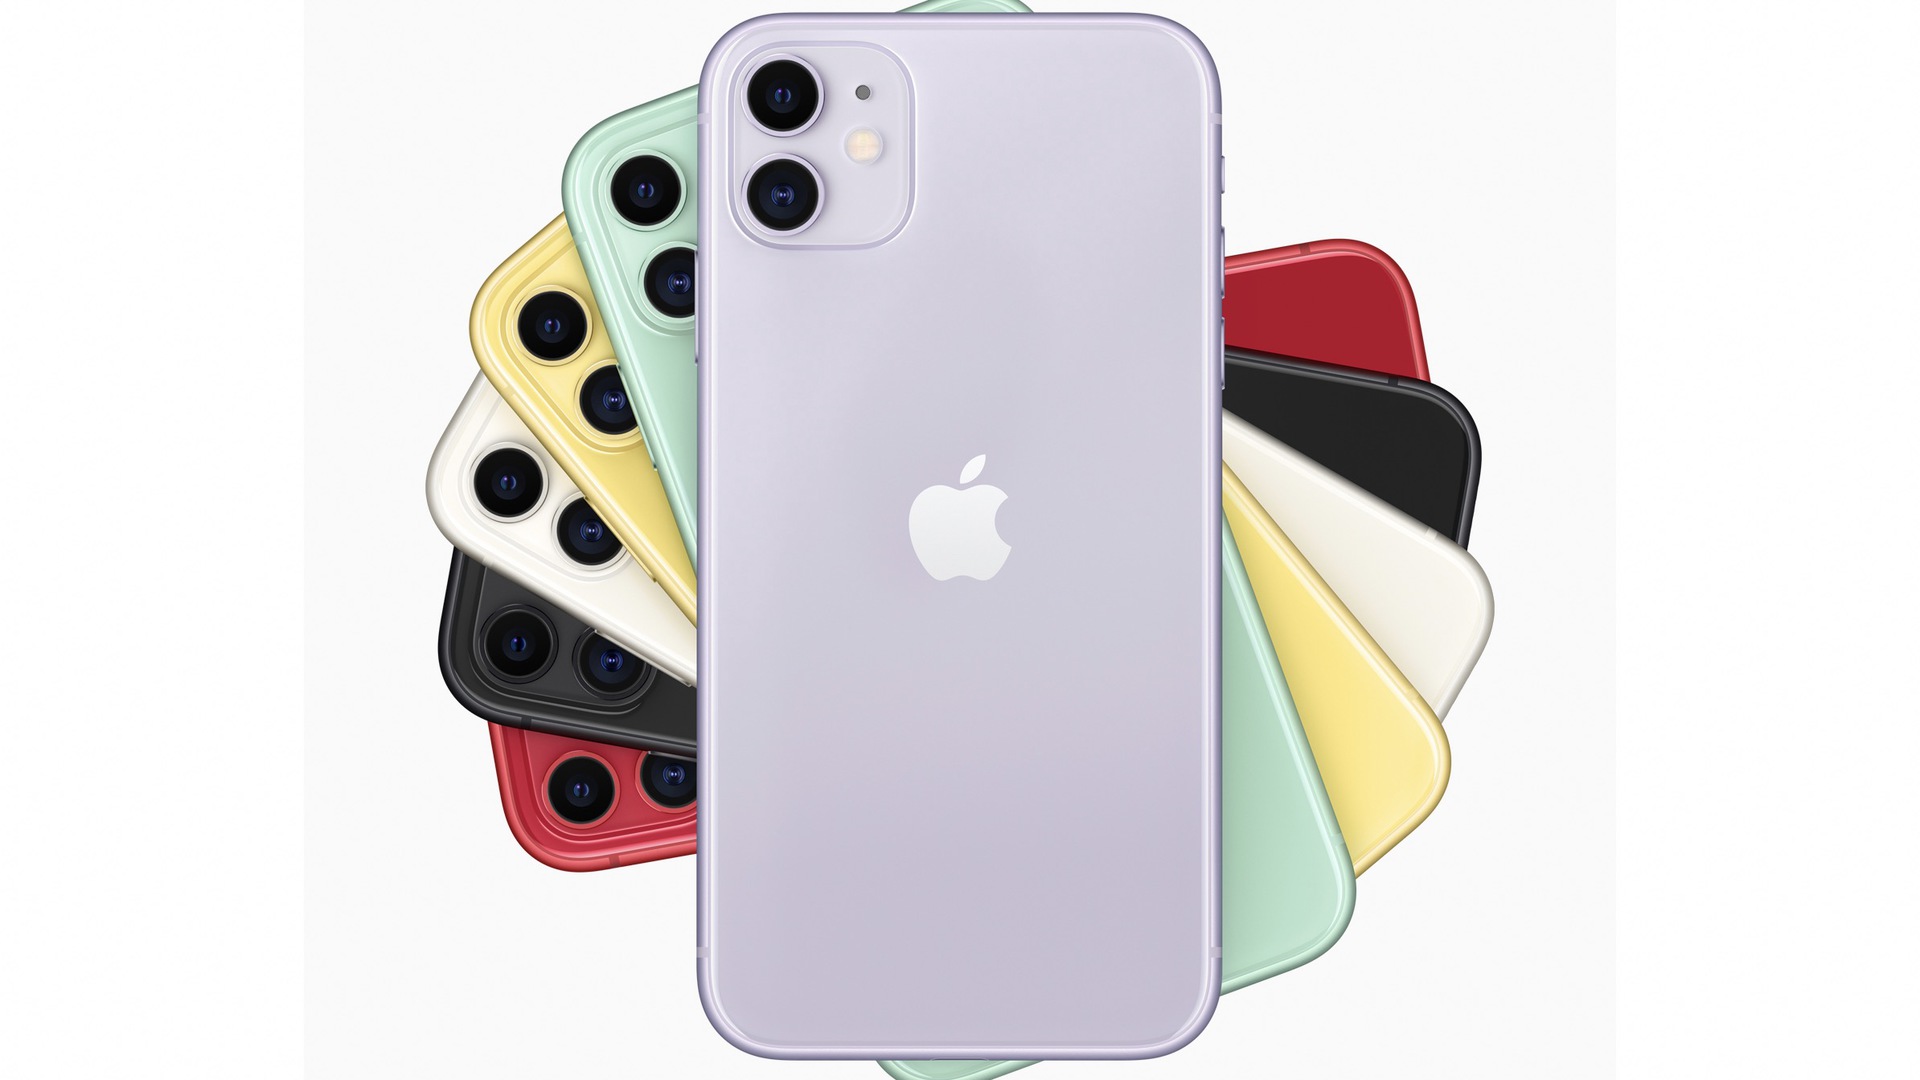 Apple iPhone 11 colorways 2019